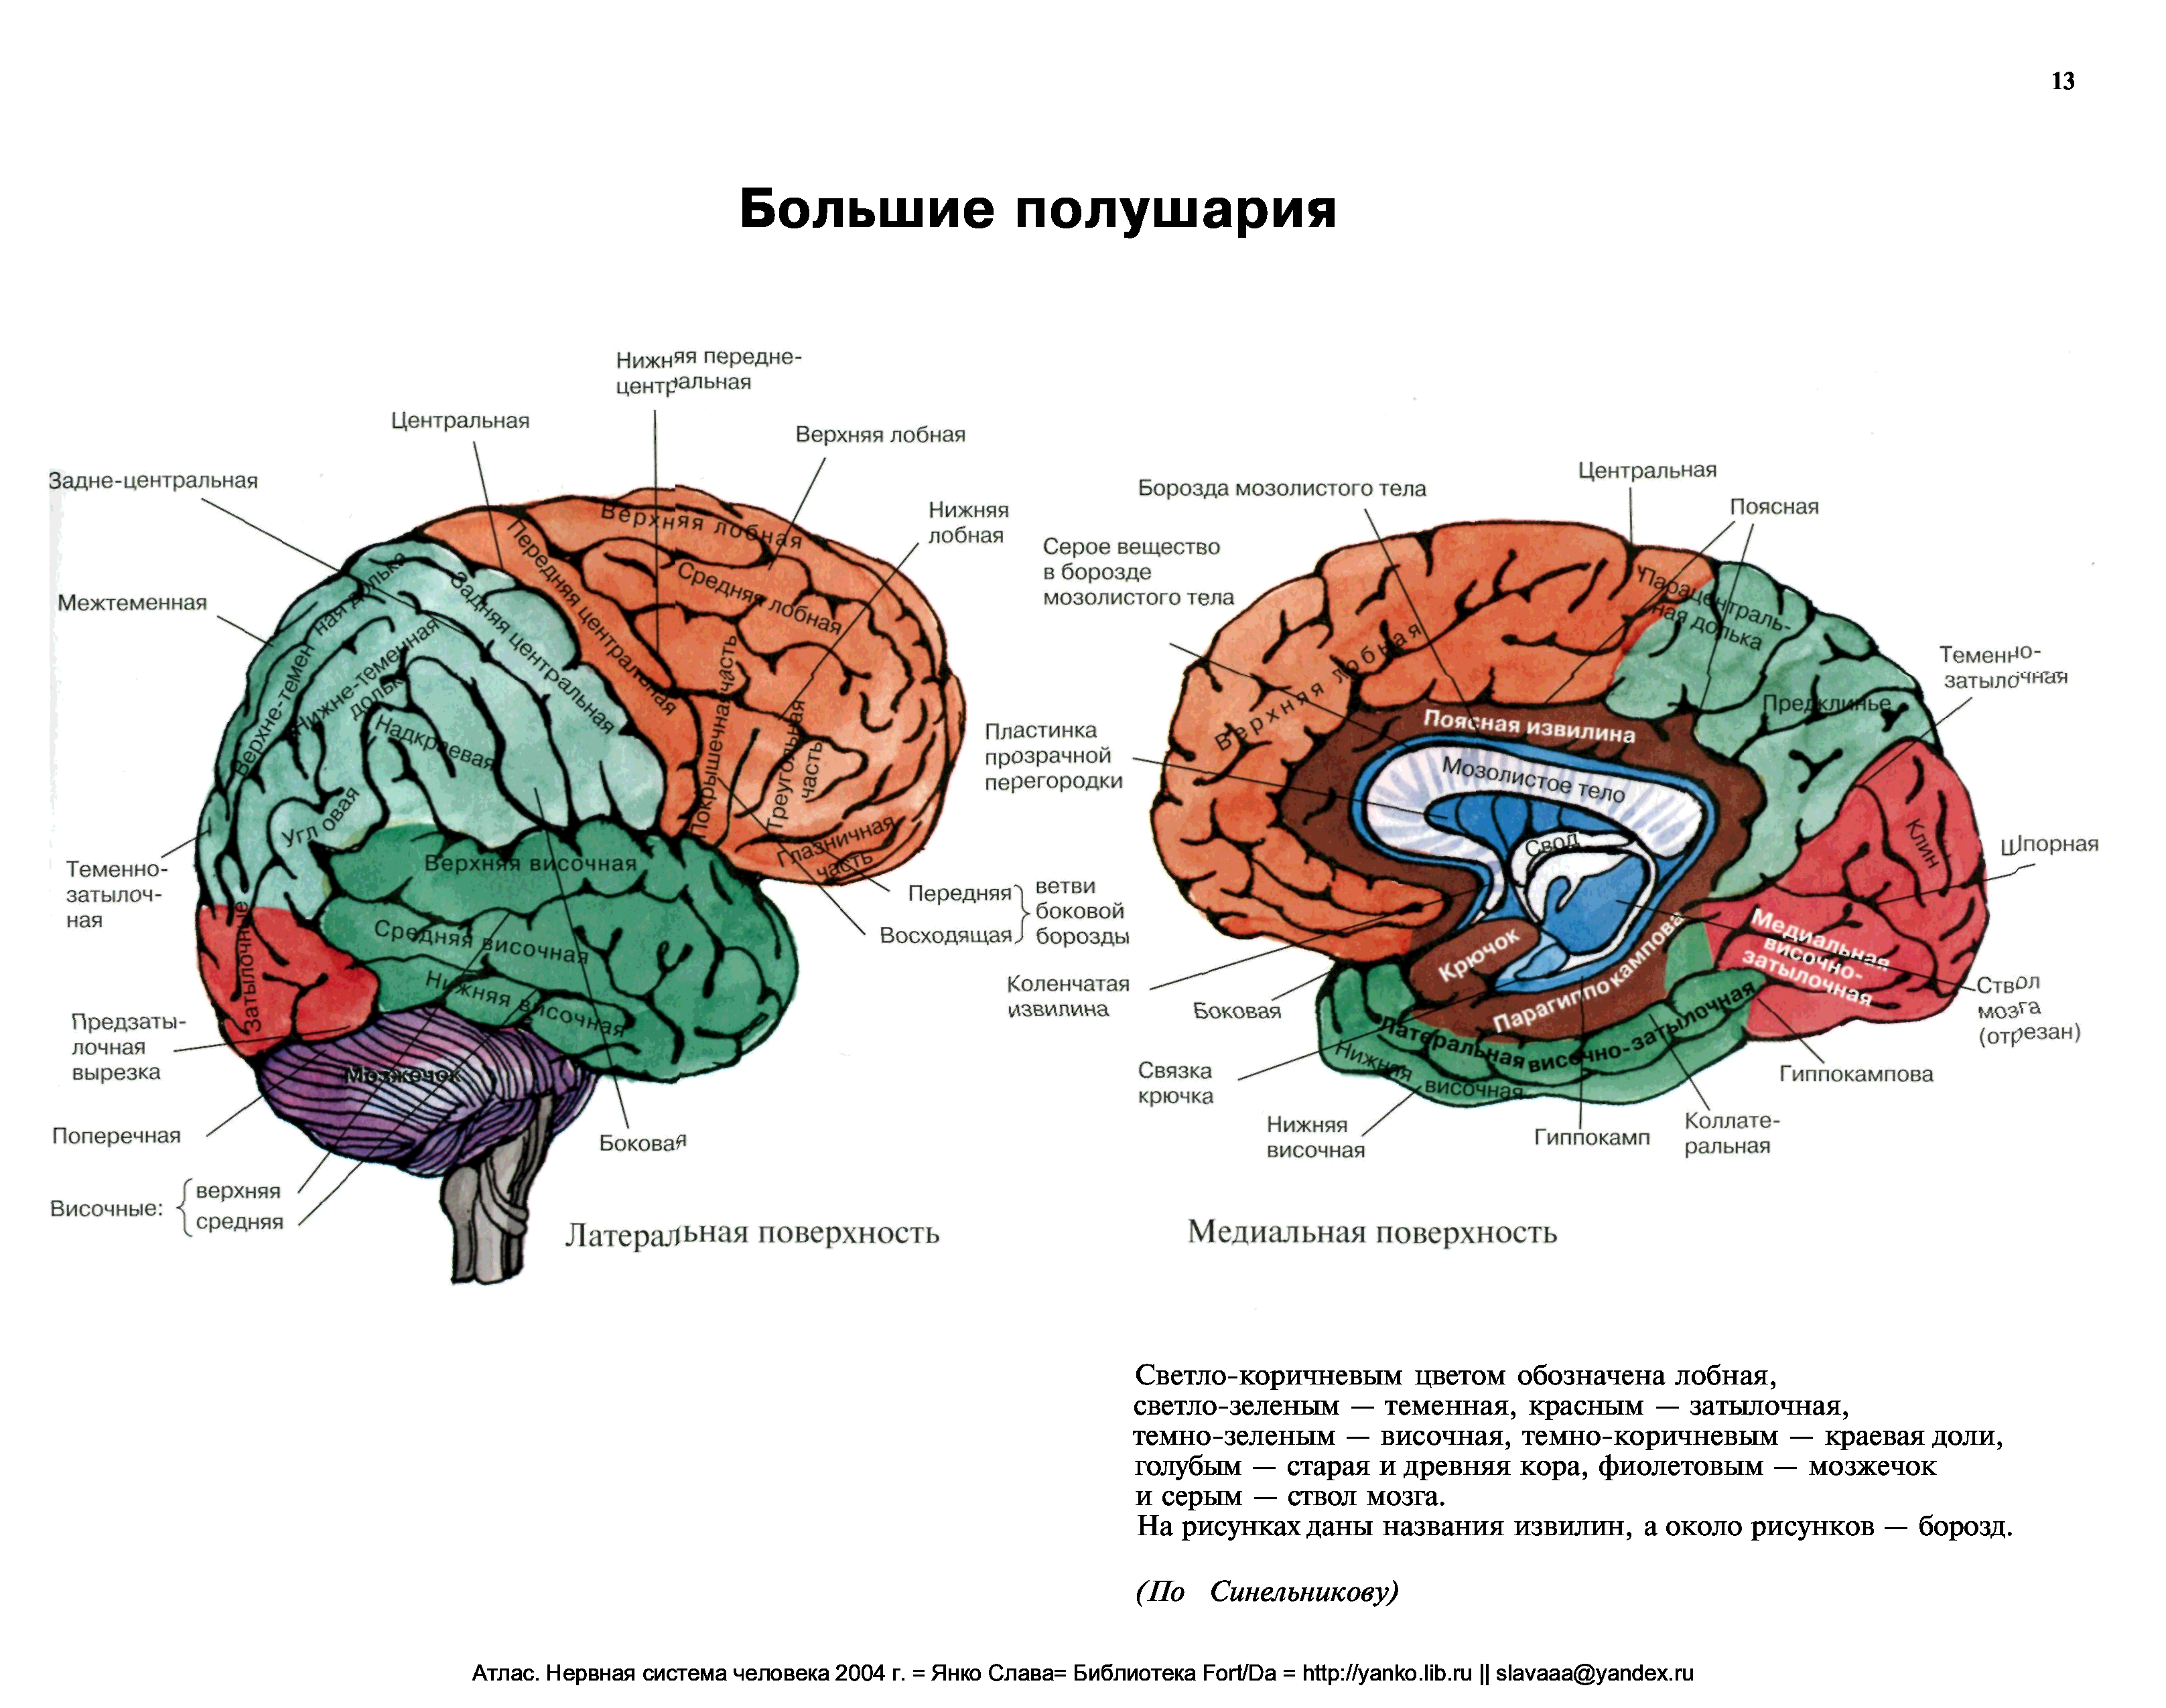 Большие полушария головного мозга анатомия